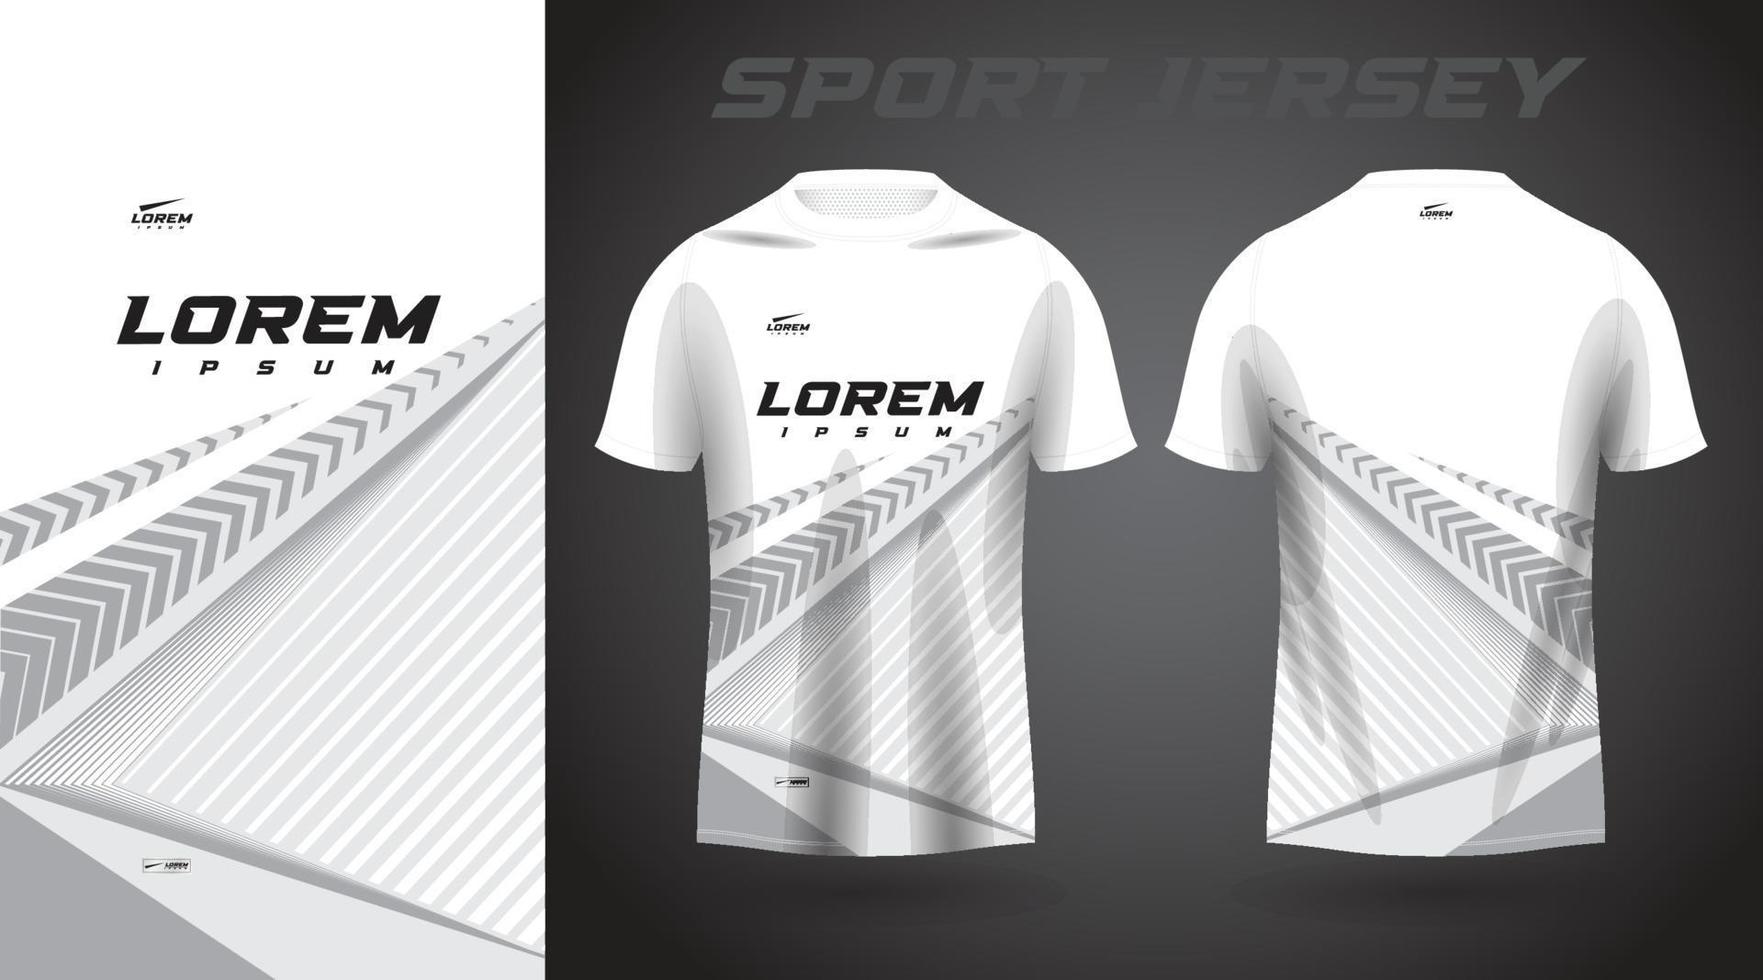 white shirt sport jersey design vector